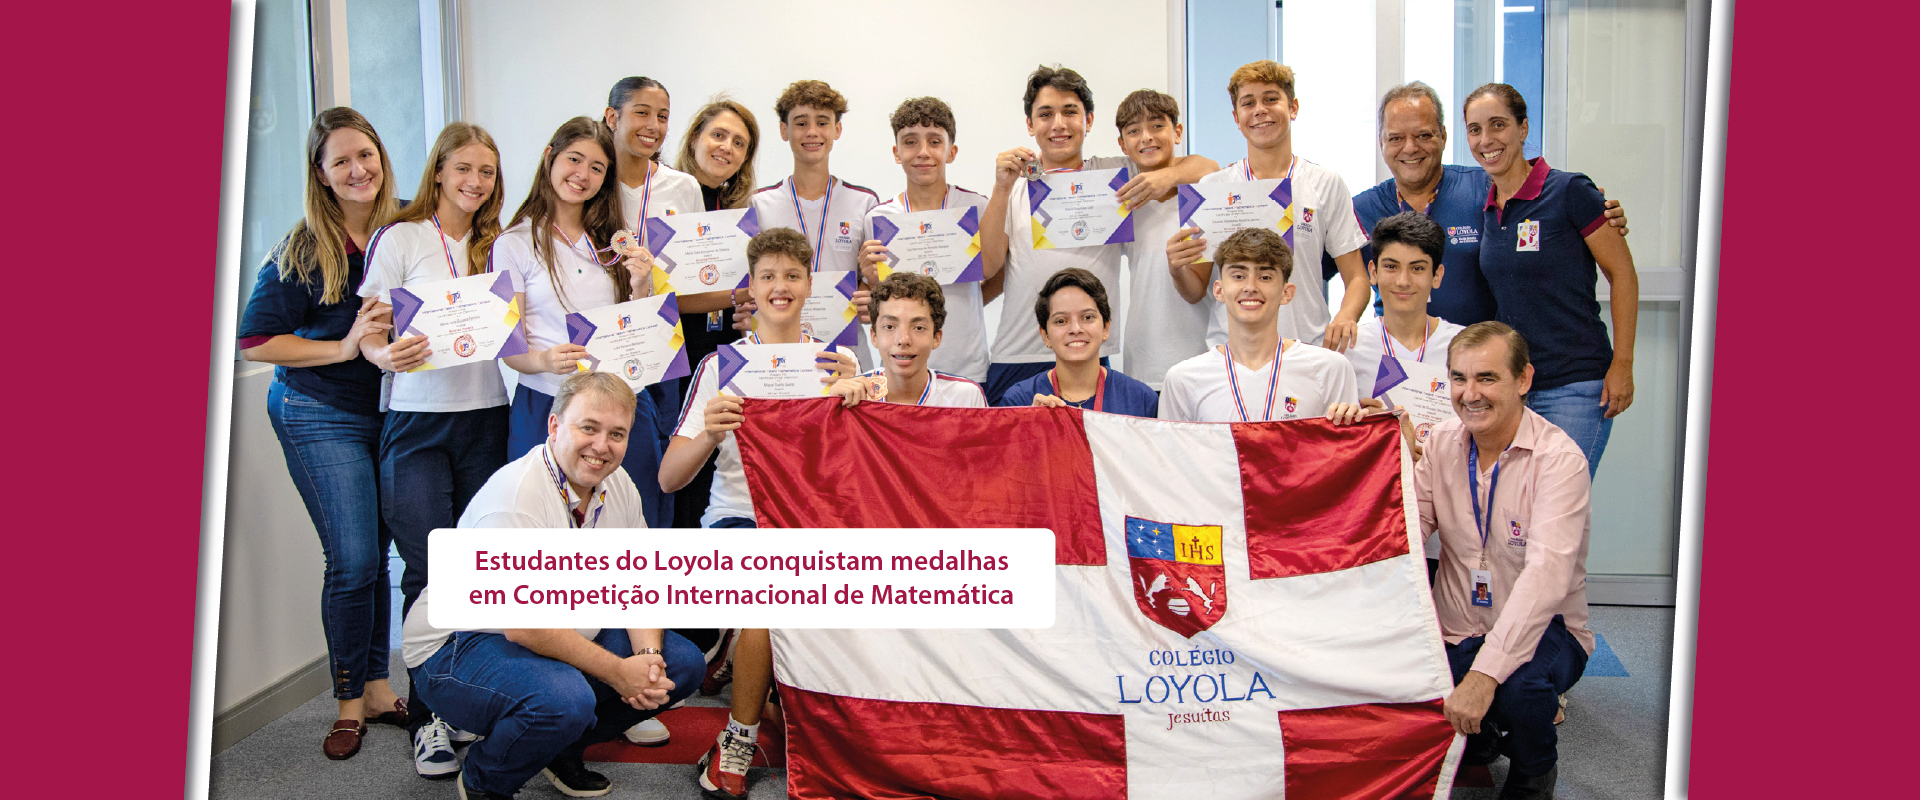 Estudantes do Loyola conquistam medalhas em Competição Internacional de Matemática